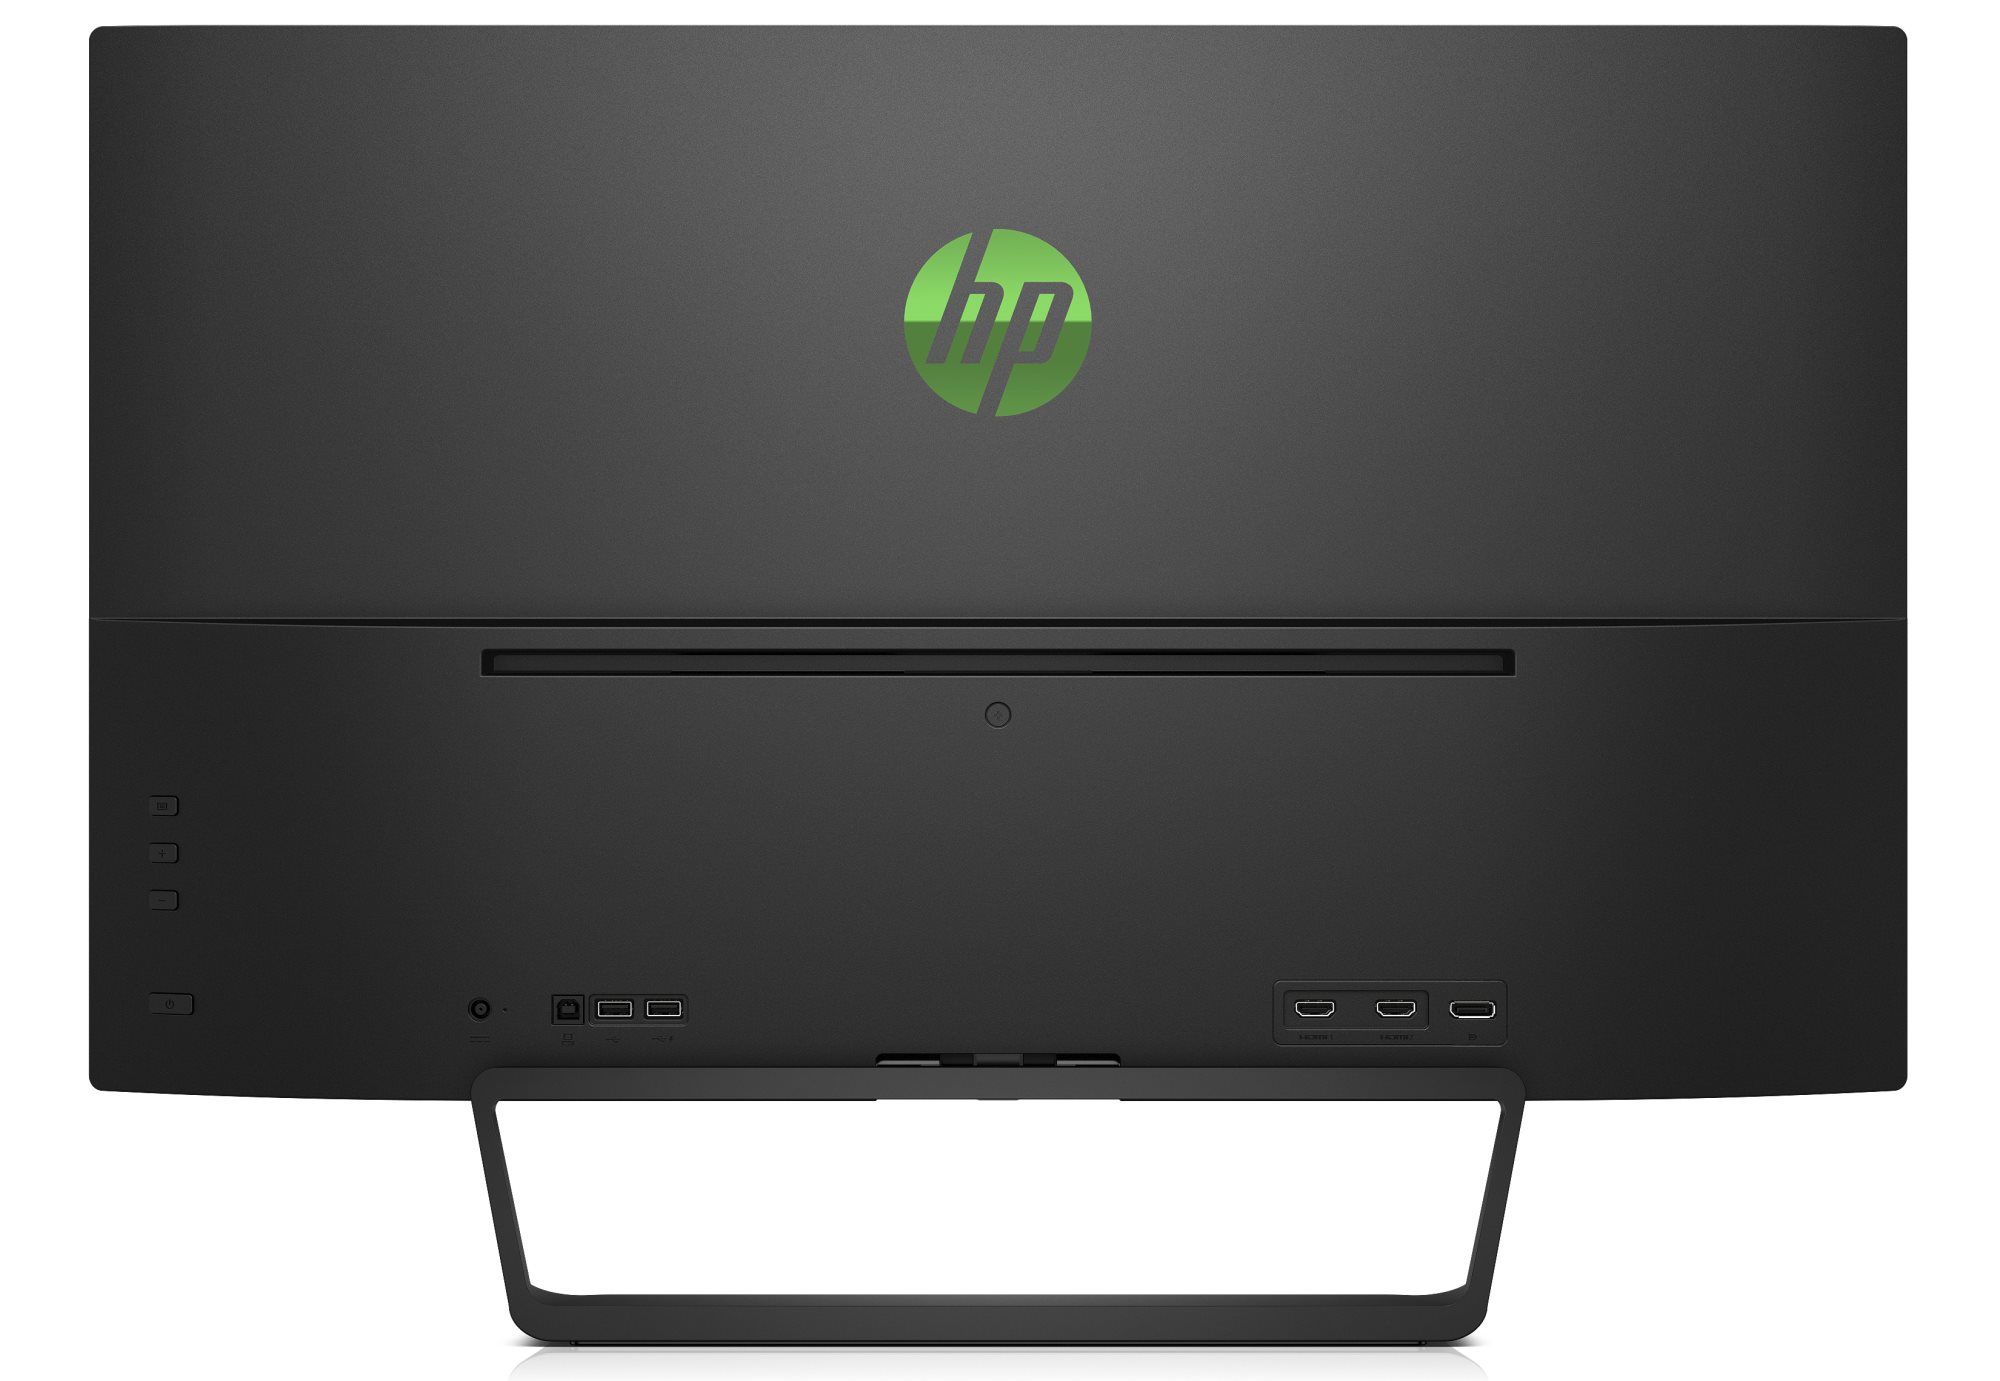 公式ショップから探す HP Pavilion display HDR 32 gaming ディスプレイ